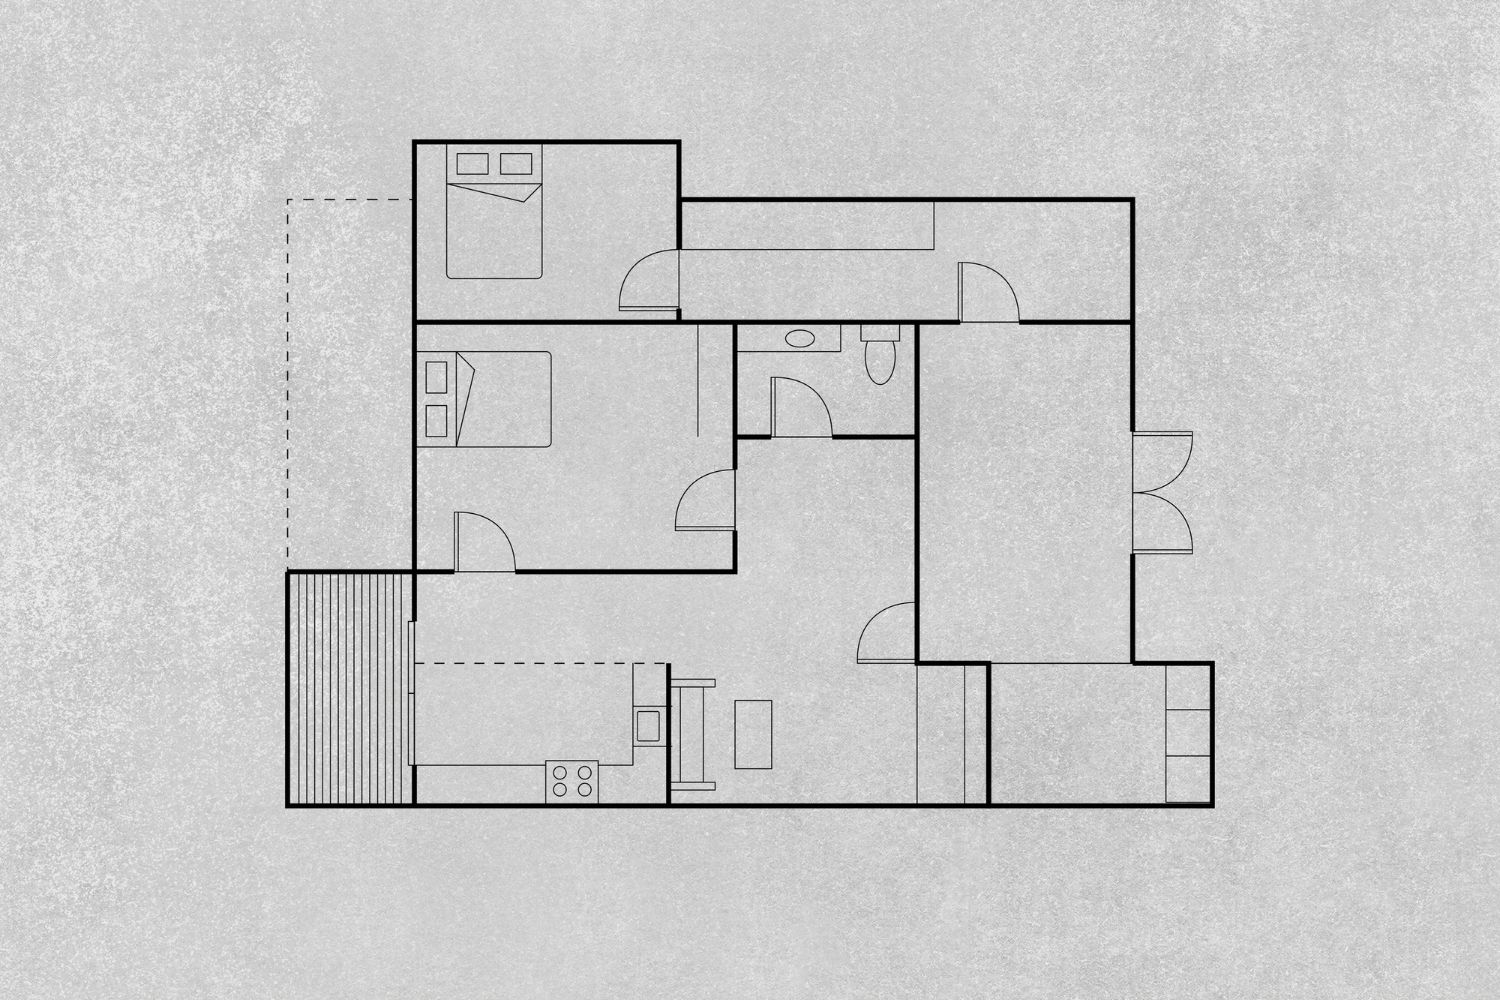 2d floor plan